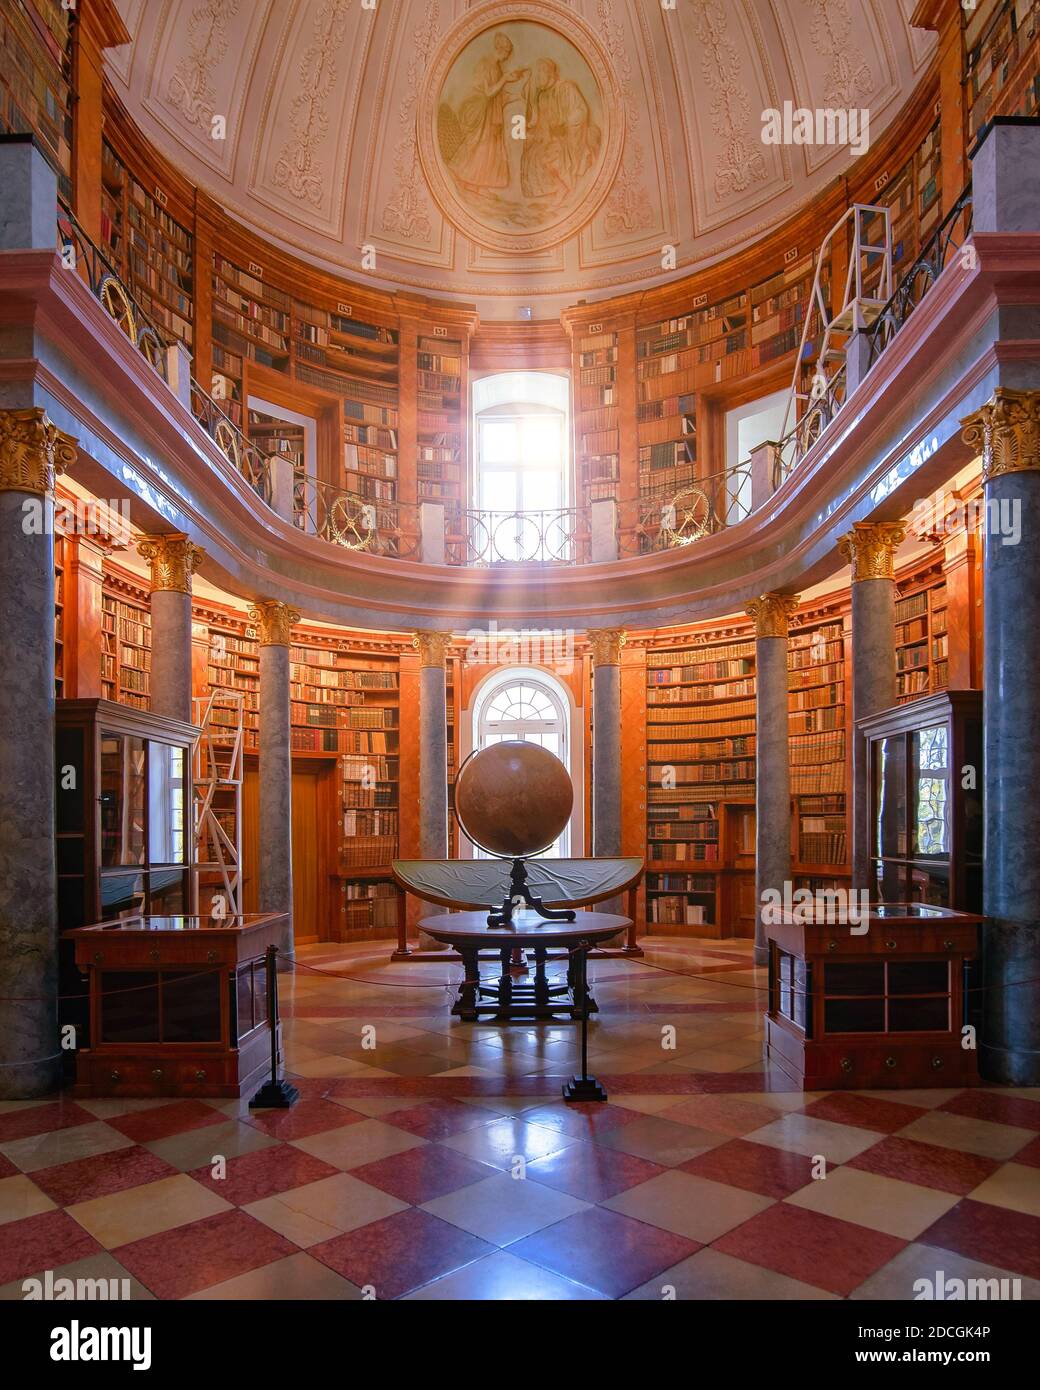 Bibliothèque de l'abbaye de Pannonhalma en Hongrie. Des fresques étonnantes de vieux livres en bois et beaucoup plus de reliques religieuses historiques Banque D'Images